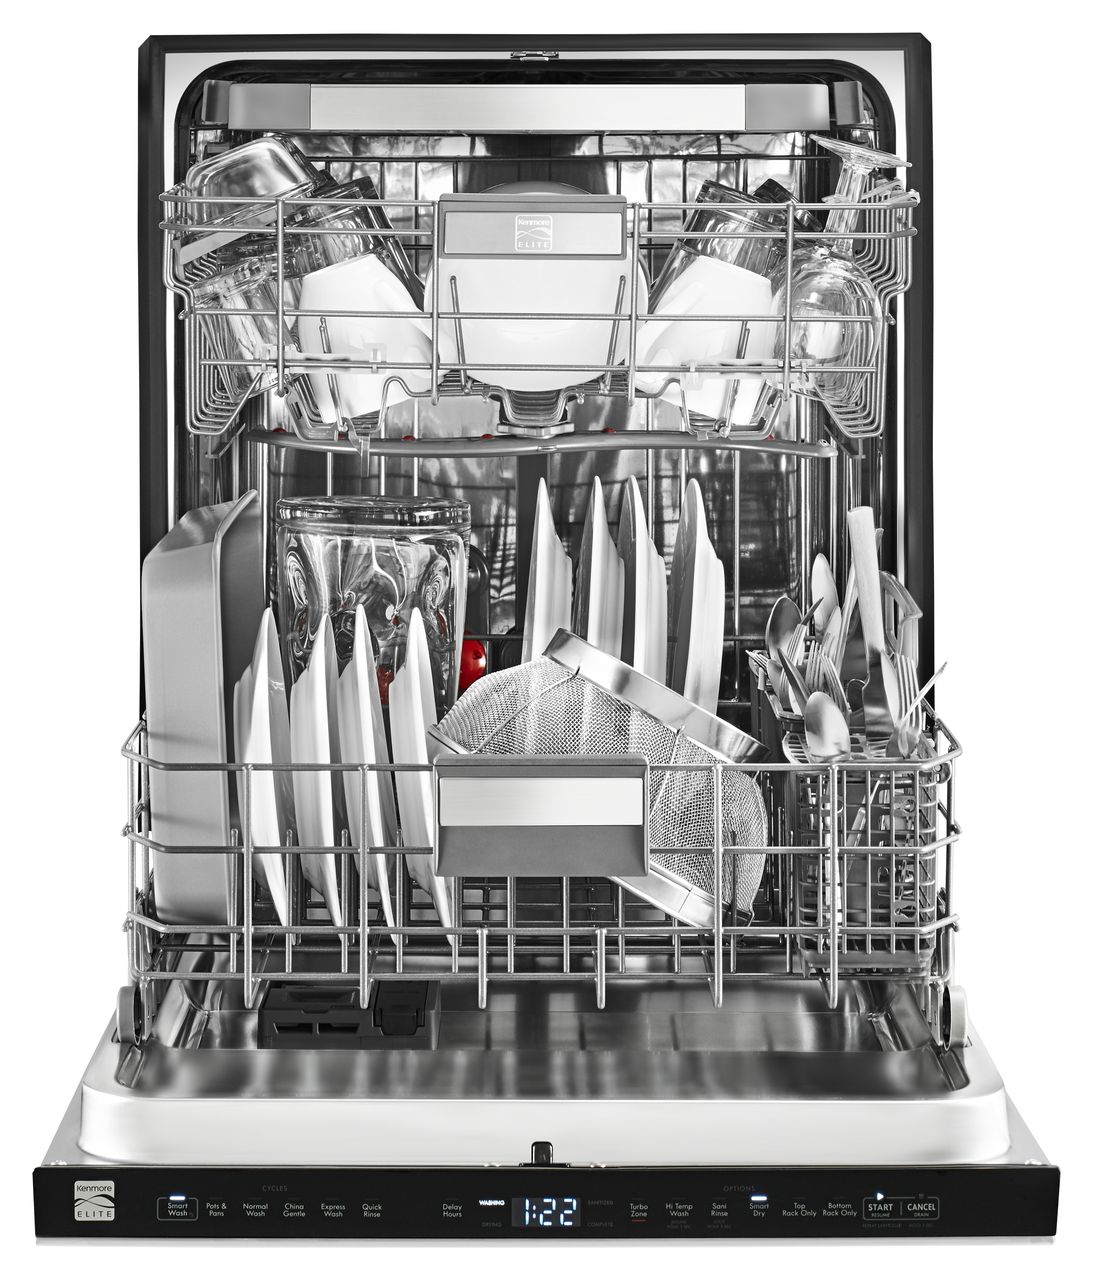 sears kenmore elite dishwasher